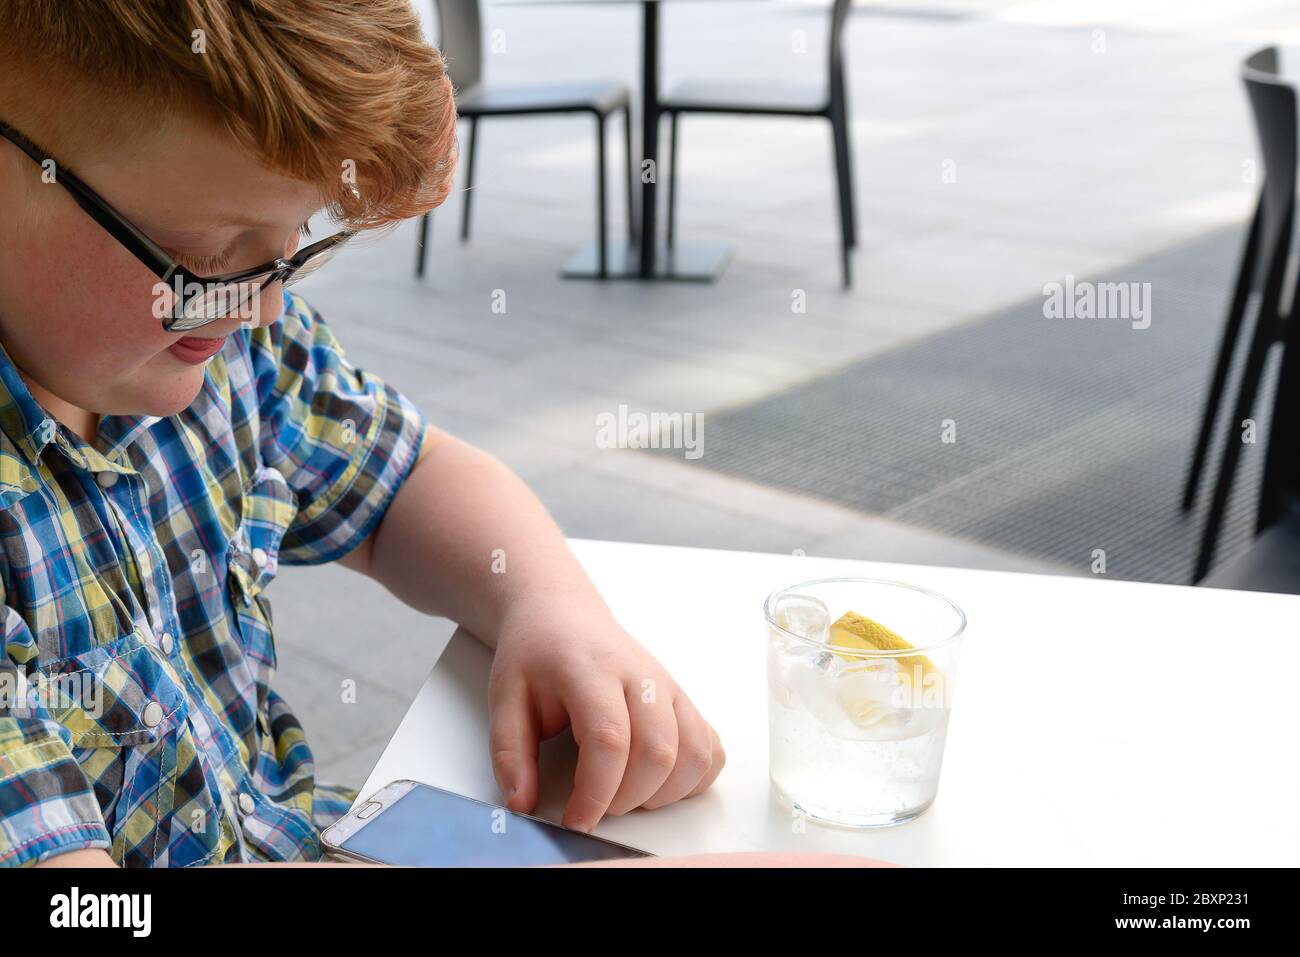 Rothaariger Junge mit Handy, der aus einem Glas Eiswasser mit Zitrone trinkt. Kind mit Brille in einem karierten Hemd gekleidet sieht auf das Smartphone und d Stockfoto